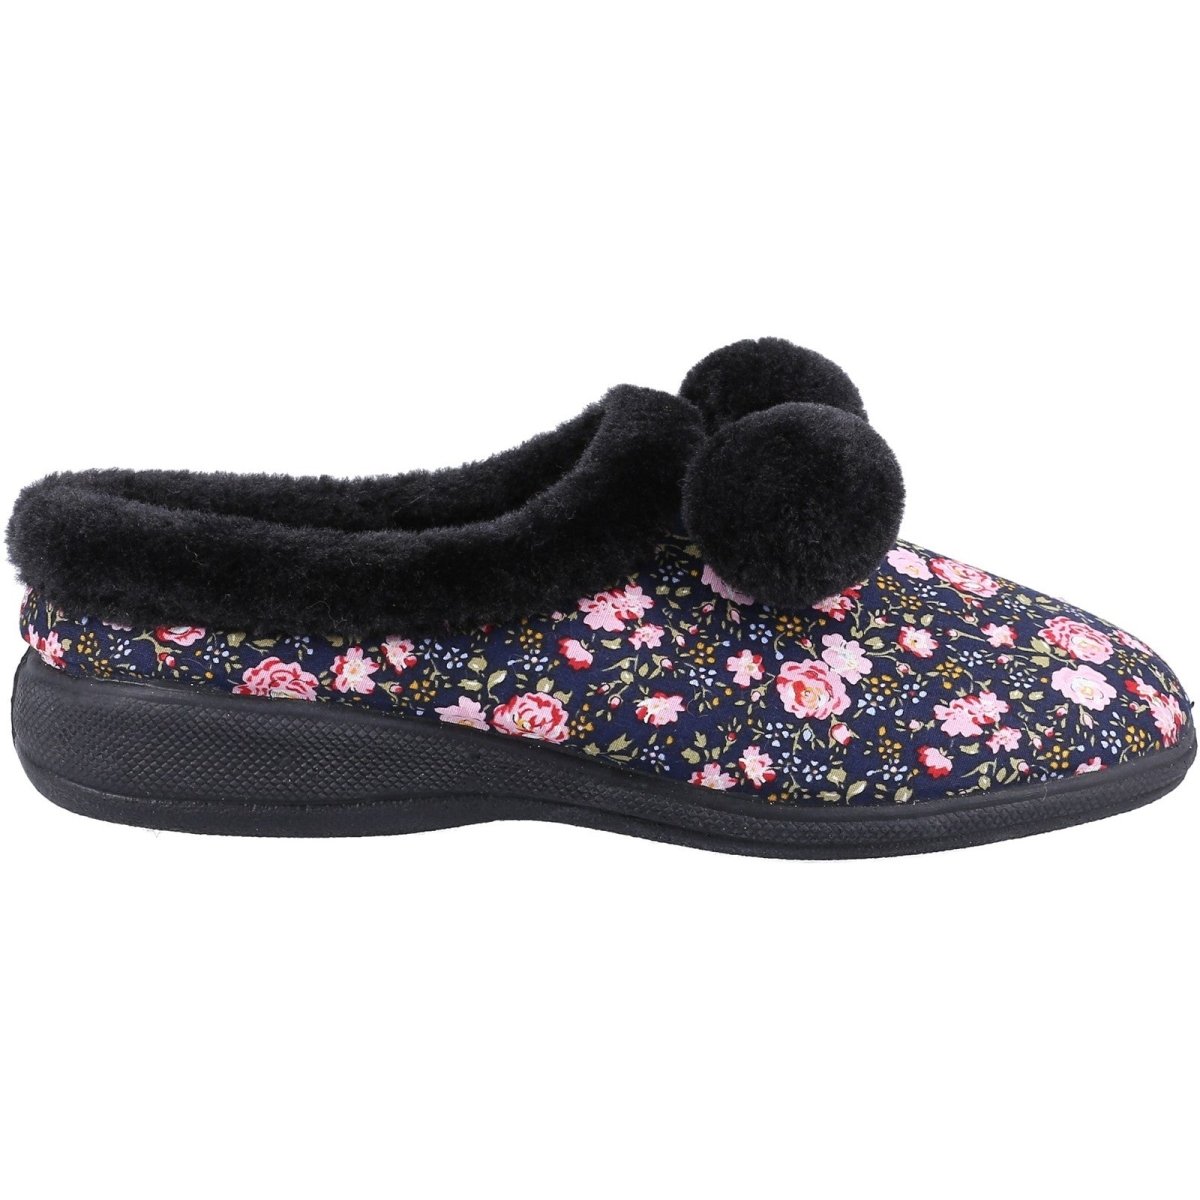 Fleet & Foster Buzzard Pom Poms Ladies Mule Slippers - Shoe Store Direct